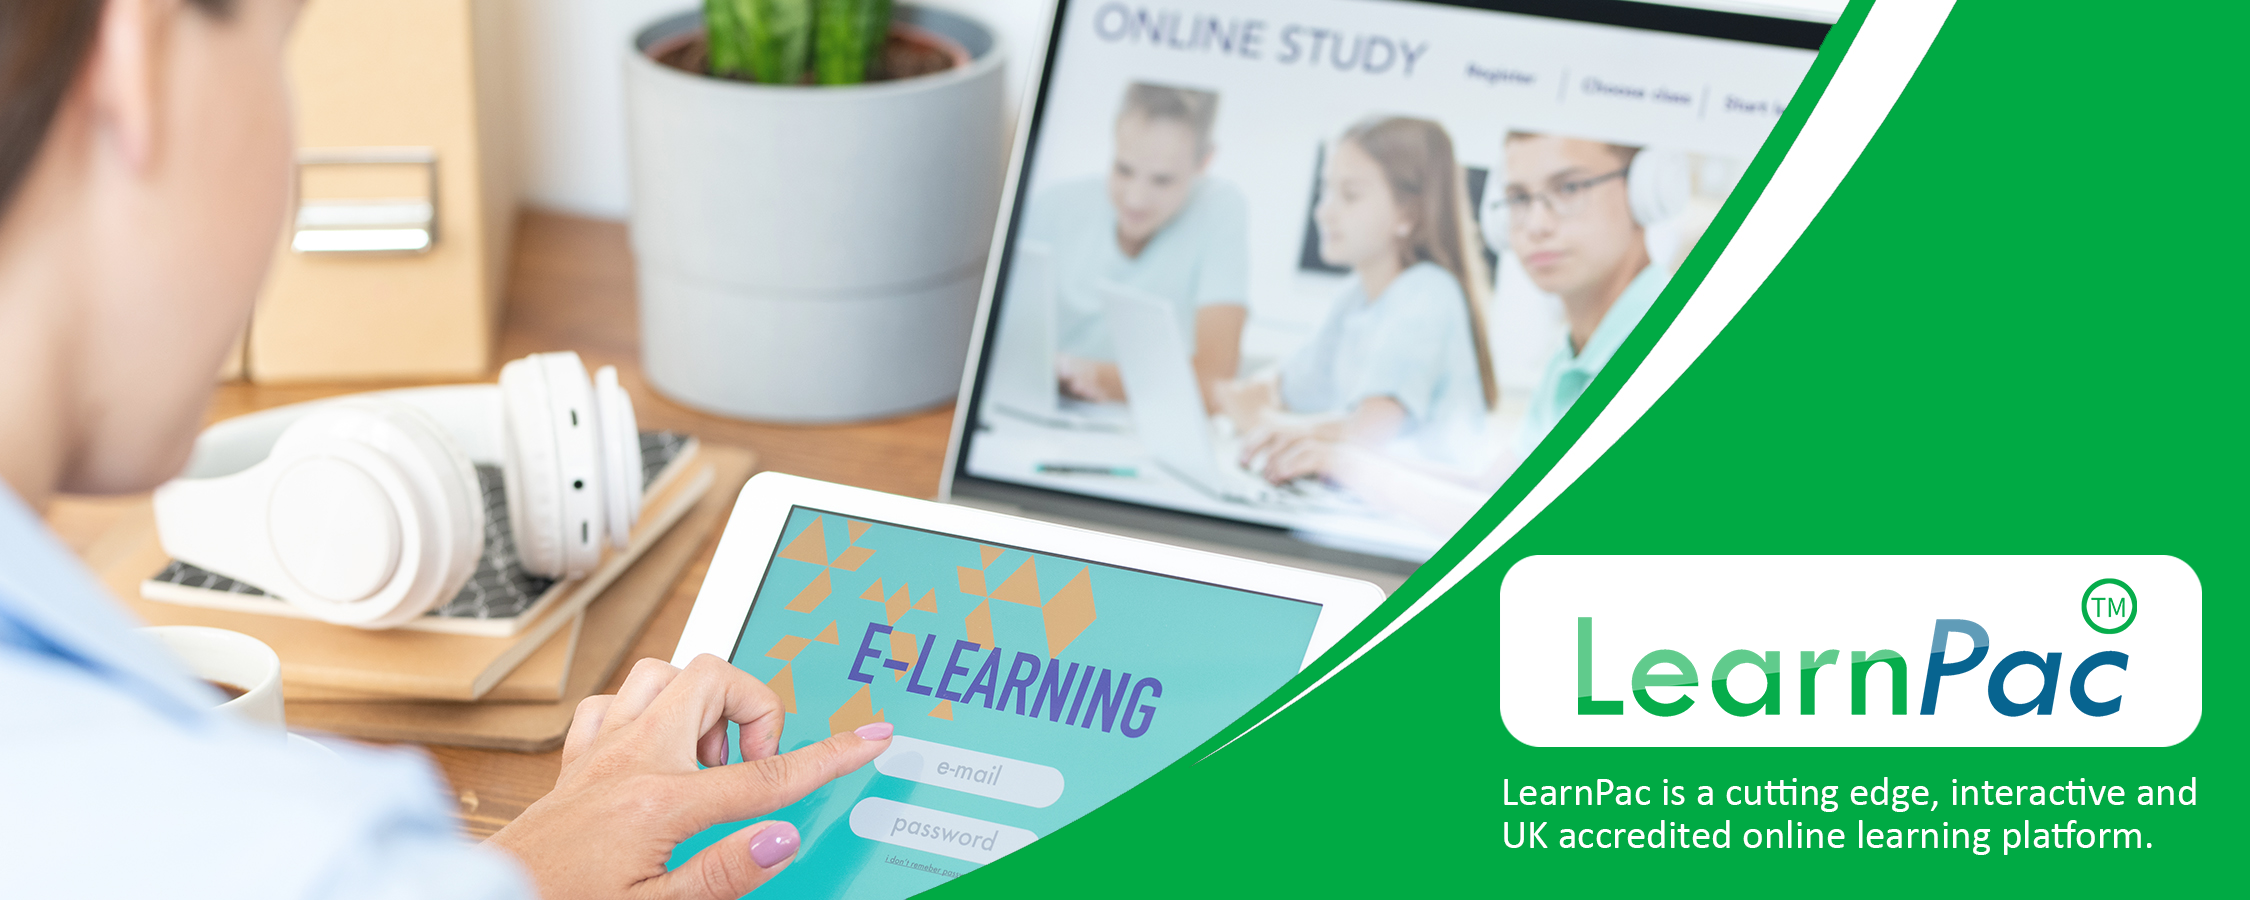 Safe Handling of Medication in Home Care - Online Learning Courses - E-Learning Courses - LearnPac Systems UK -